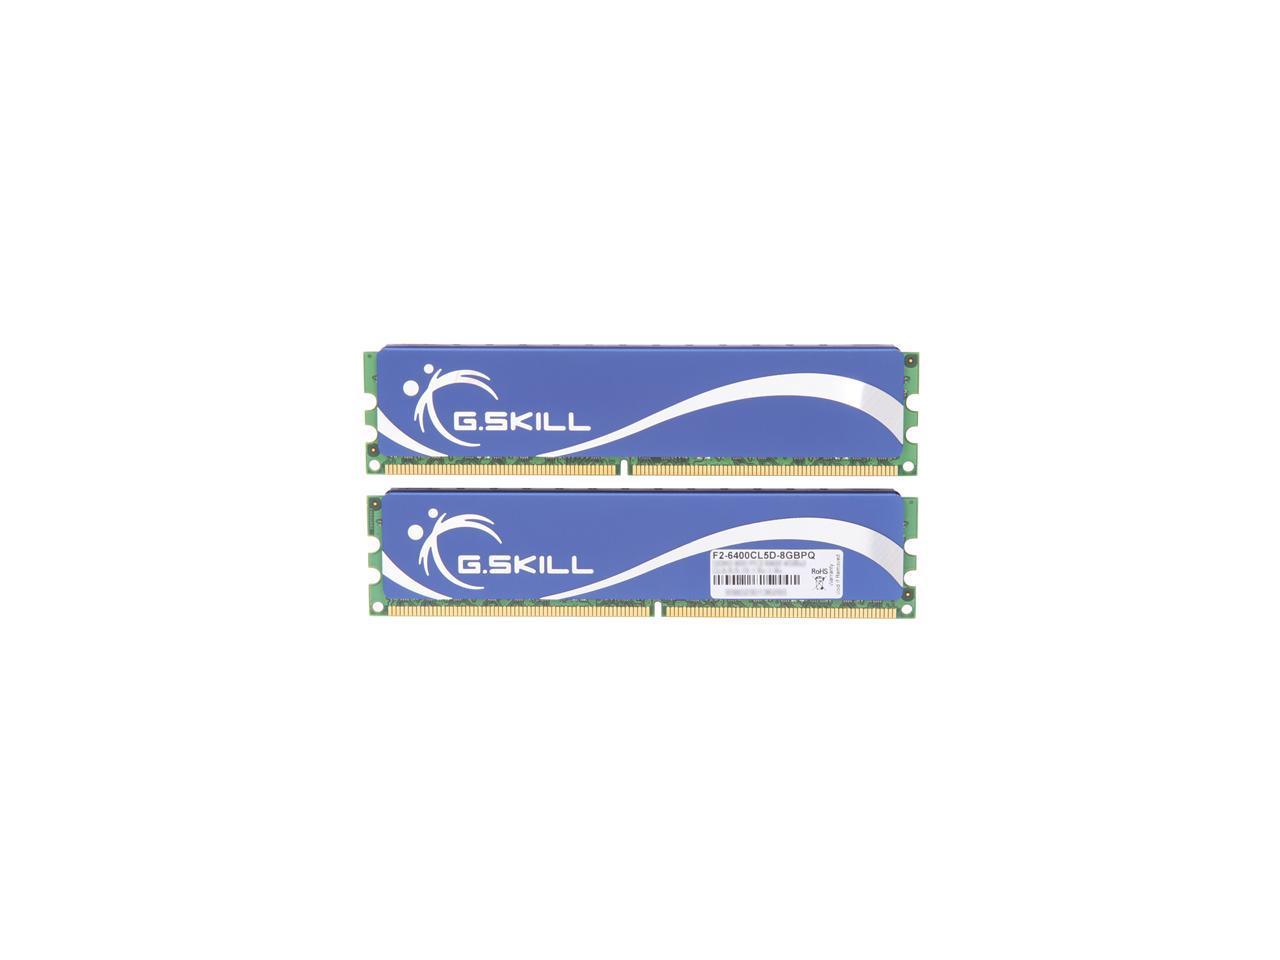 G.SKILL 8GB (2 x 4GB) 240-Pin DDR2 SDRAM DDR2 800 (PC2 6400) Desktop Memory Model F2-6400CL5D-8GBPQ